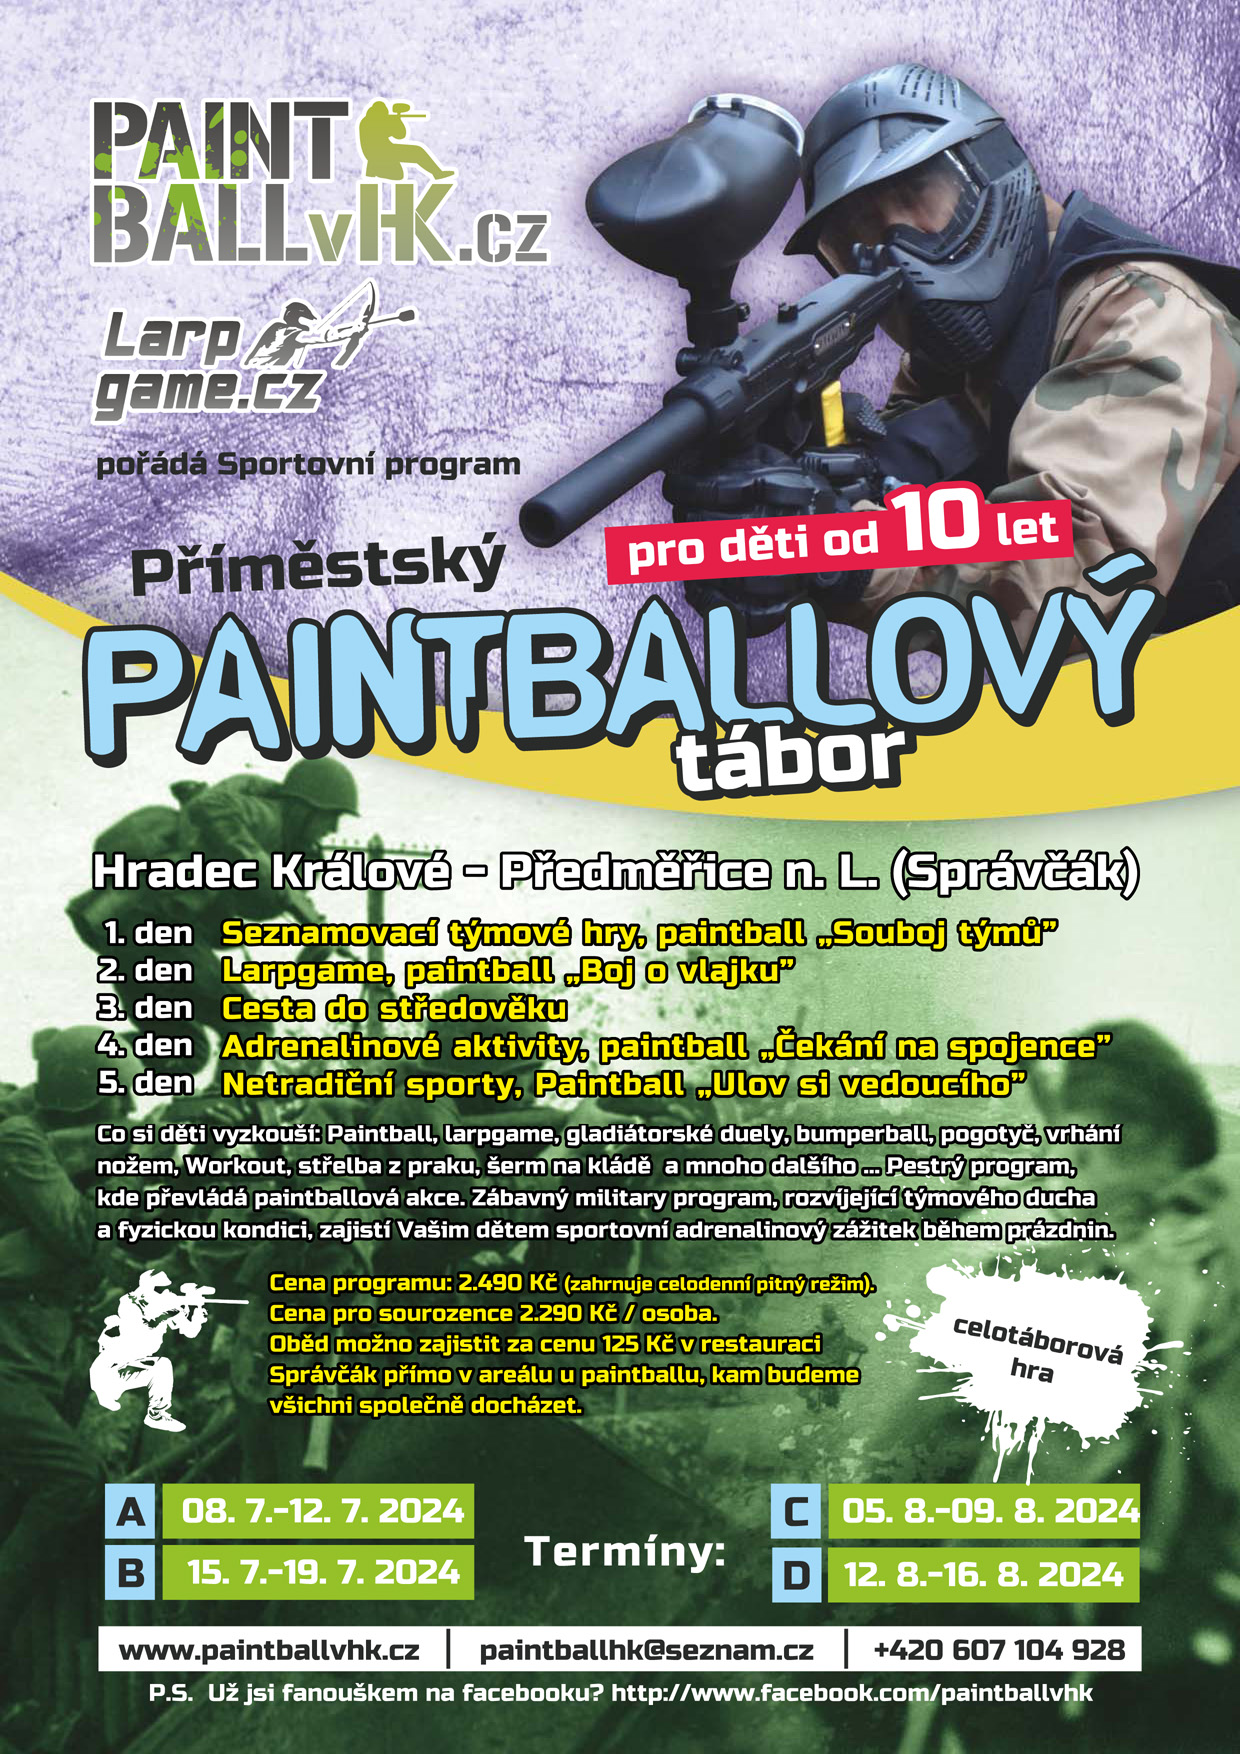 Paintball - Správčický rybník